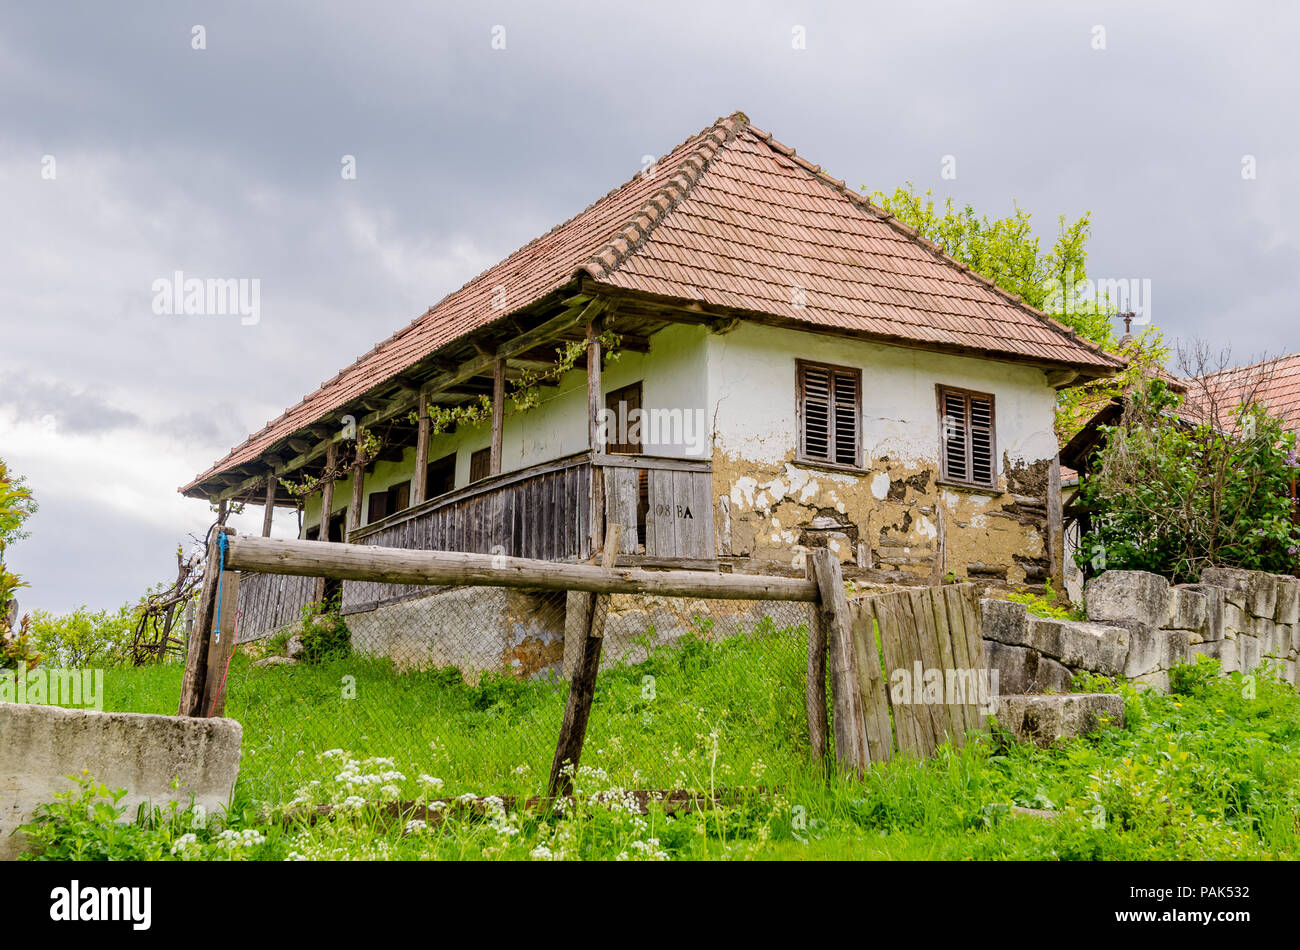 Tradicional casa de adobe de Transilvania abandonada en una zona rural con una triste mirada degradante Foto de stock